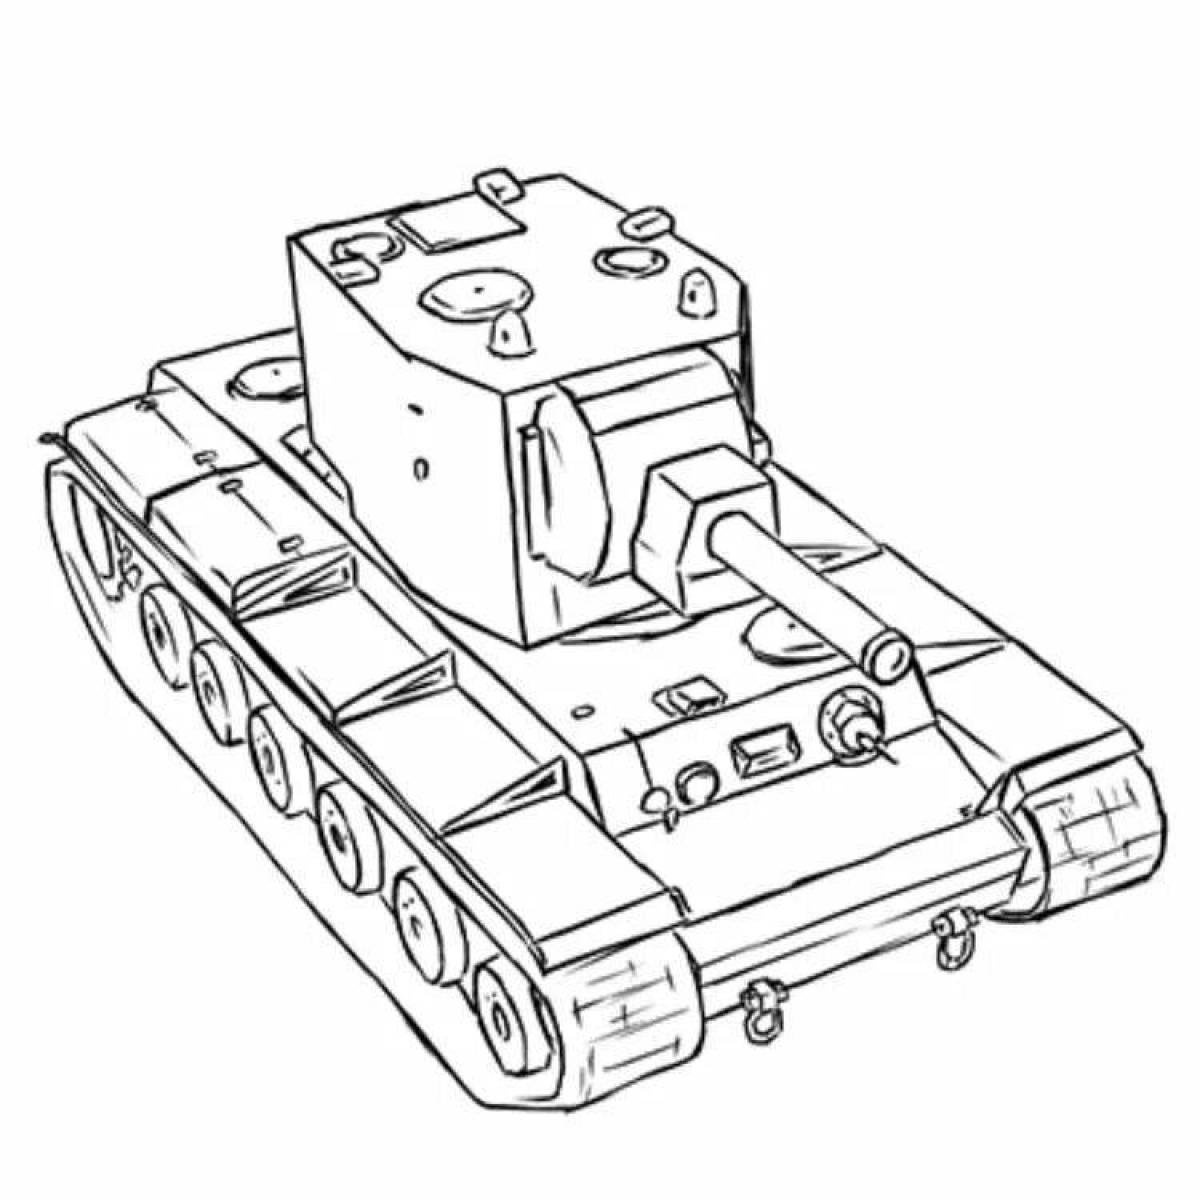 Coloring tank kv-2